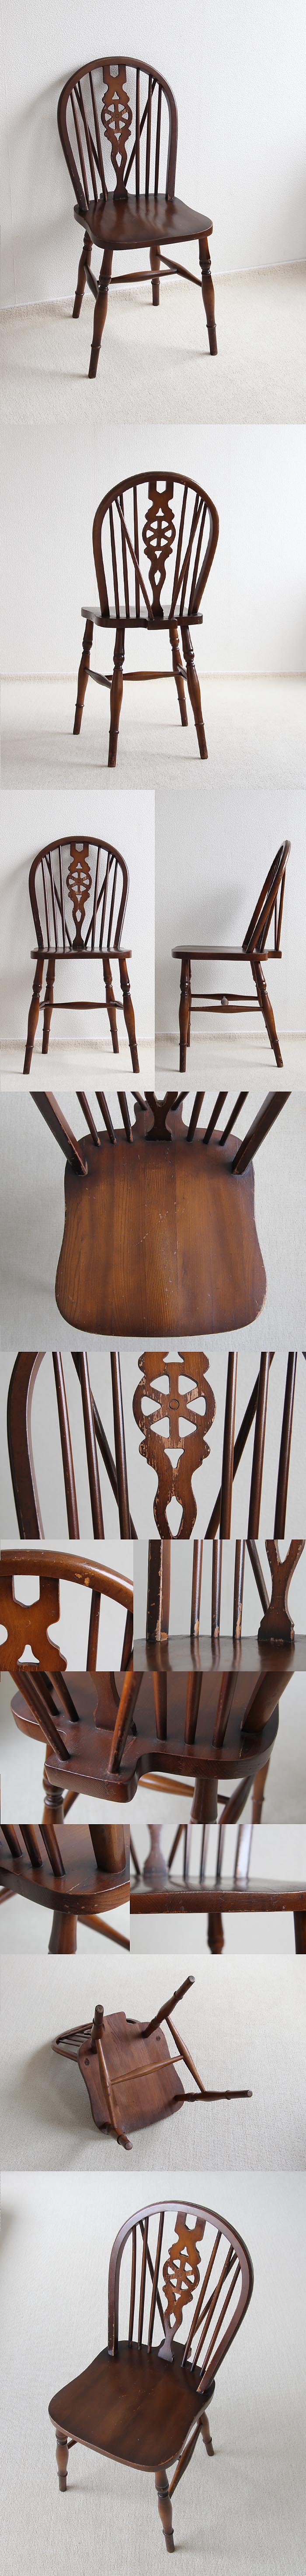 イギリス アンティーク調 ホイールバックチェア 木製椅子 インテリア 家具「車輪モチーフ」P-323